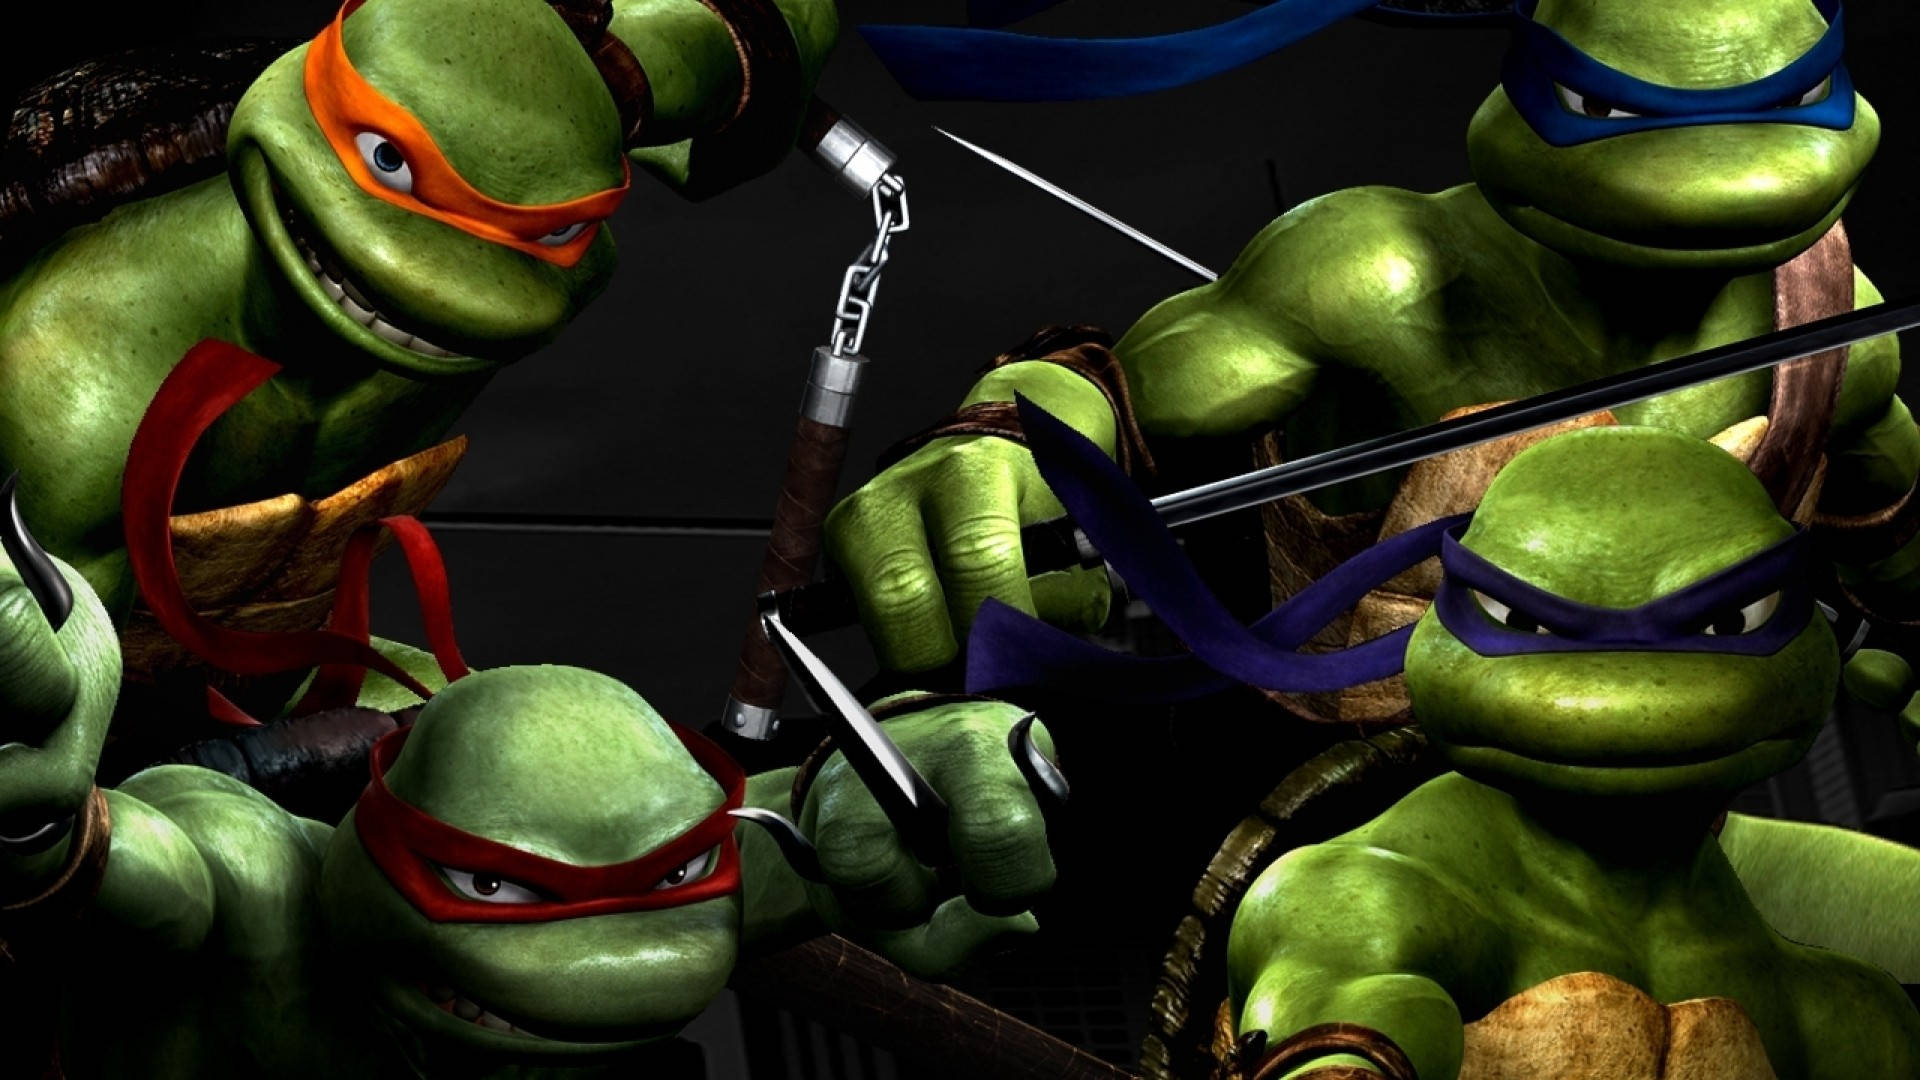 Teenage Mutant Ninja Turtles wallpaper  Ninja turtles Mutant ninja turtles  Teenage mutant ninja turtles